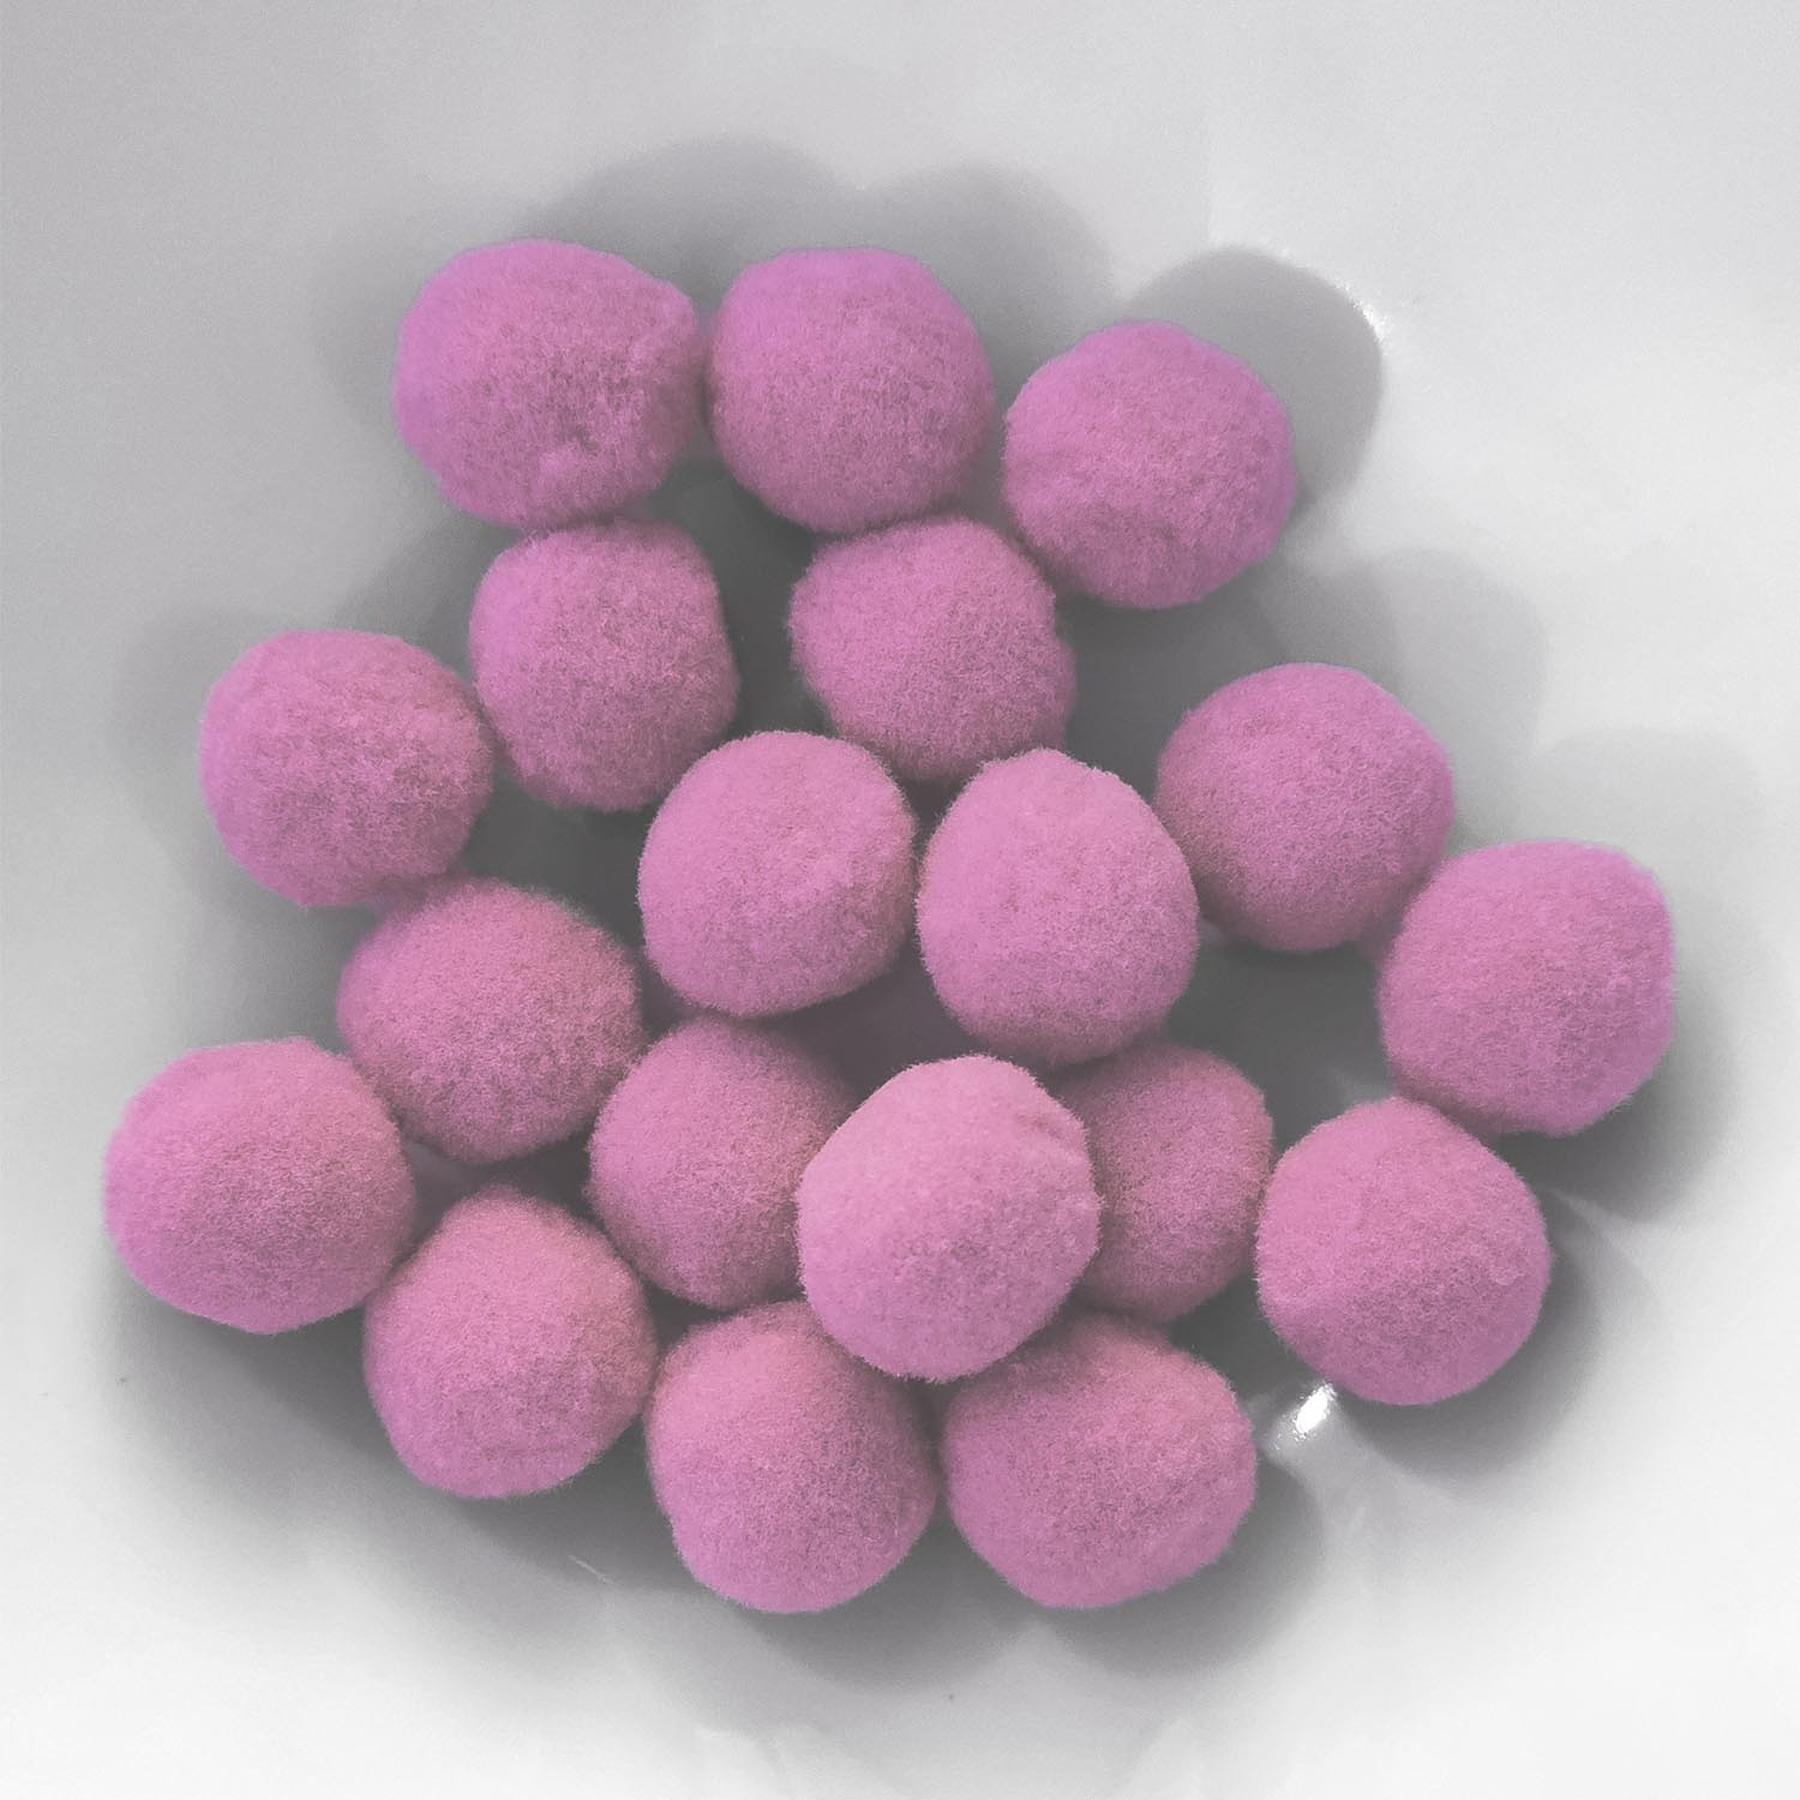 PomPon / Bälle aus Baumwolle - 20 mm / 25er Set - Rosa